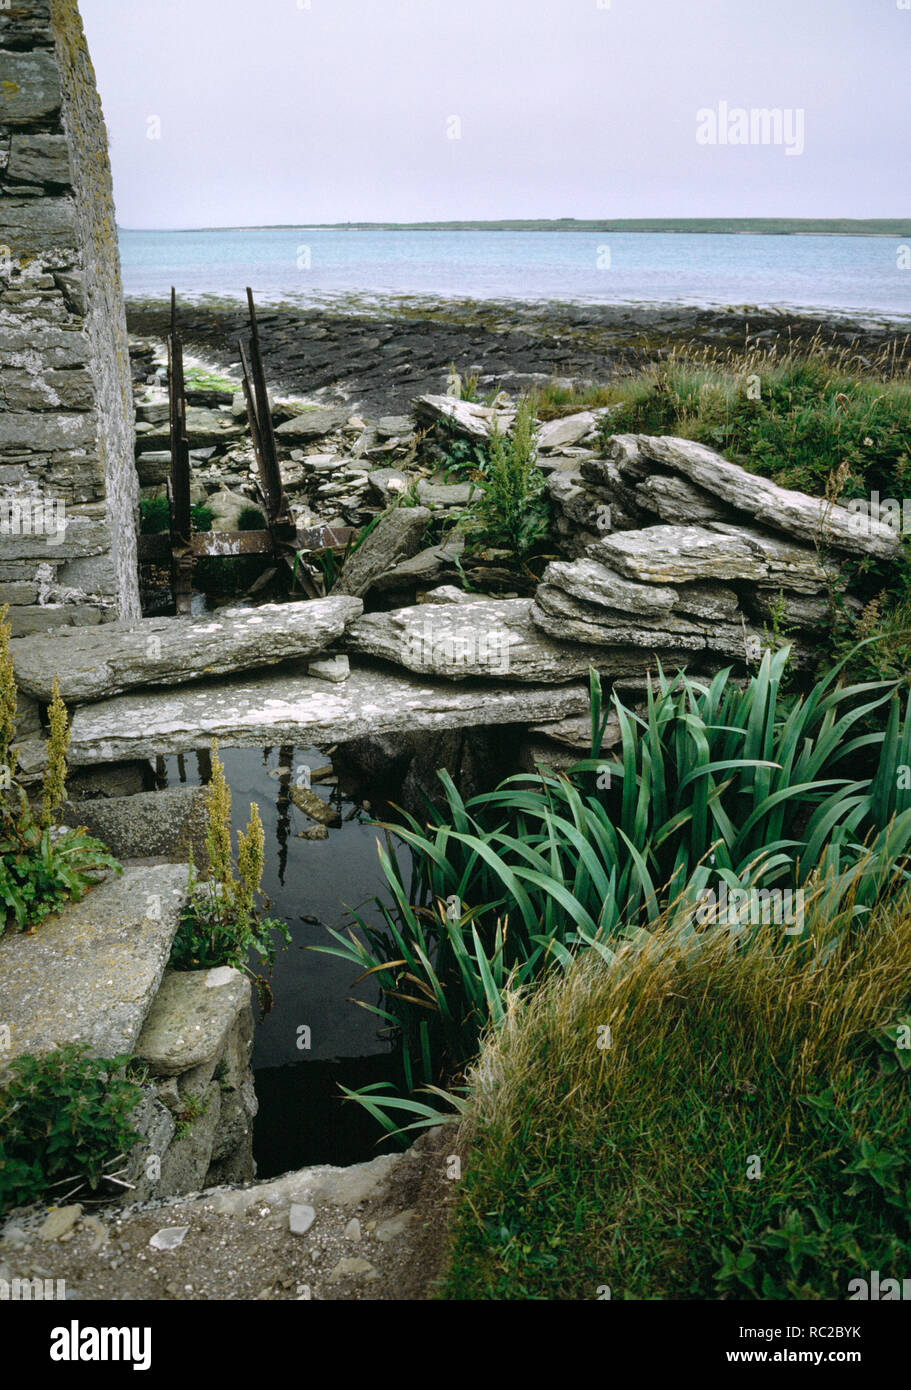 Hookin Wassermühle, Papa Westray, Orkney. Ruiniert unterschritten Getreidemühle neben Strand mit Resten von Wasser, Kanal und Bügeleisen Rahmen der Wasser Rad Stockfoto